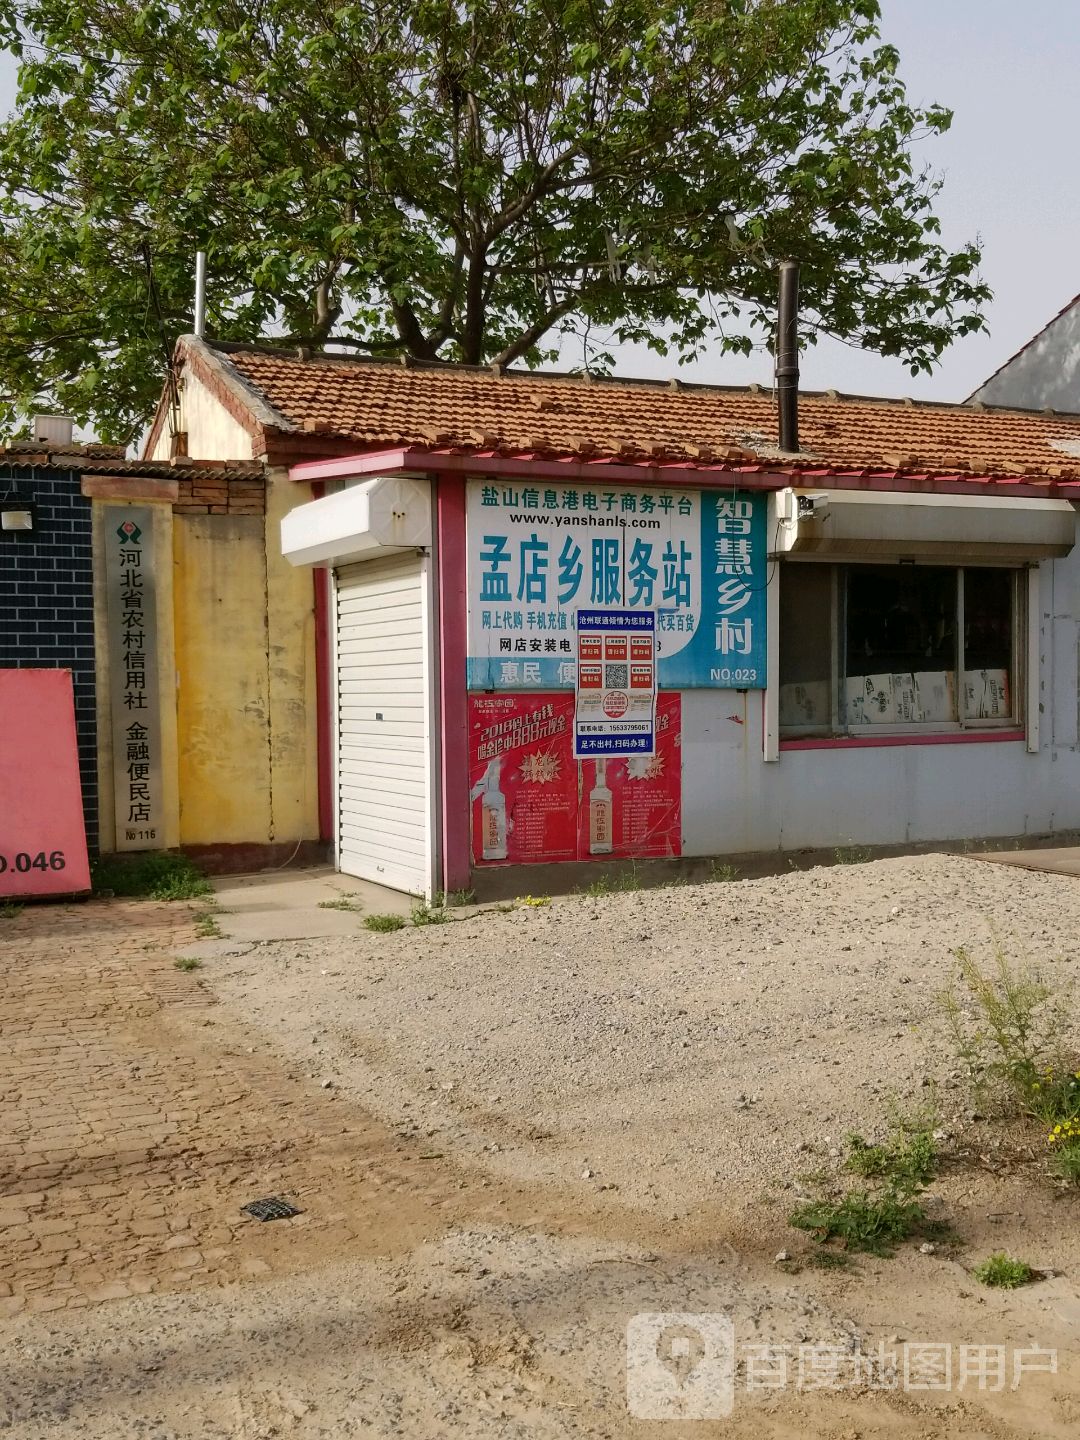 河北省农村信用社(金融便民店)